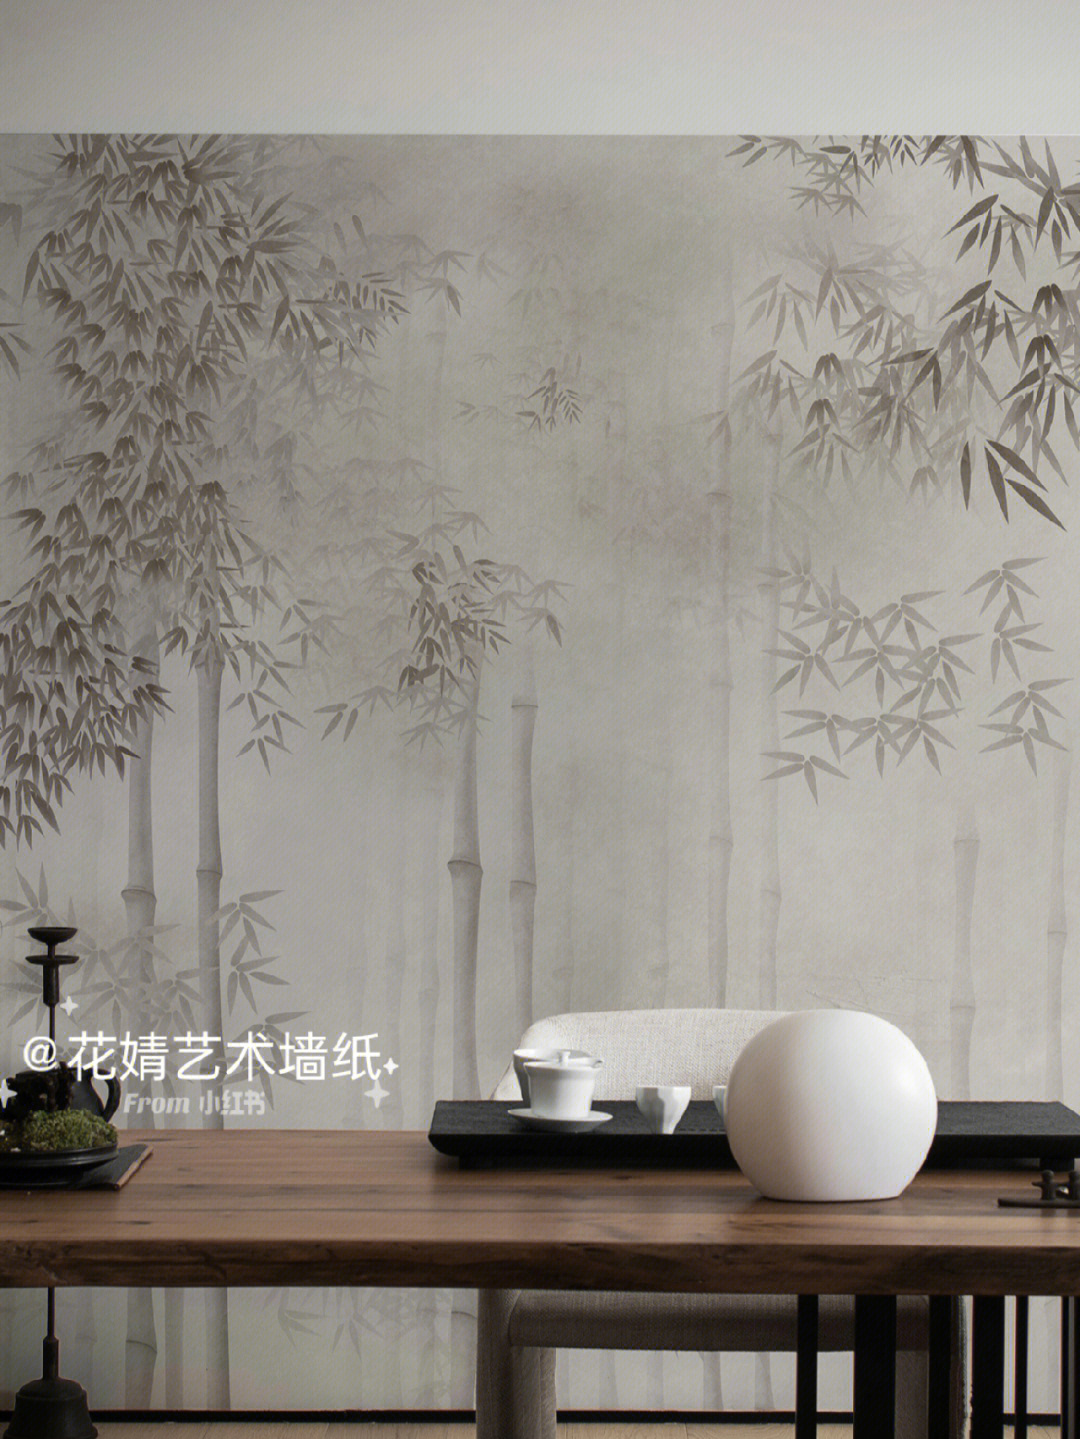 中式水墨竹林禅意壁纸创建东方意境栖居